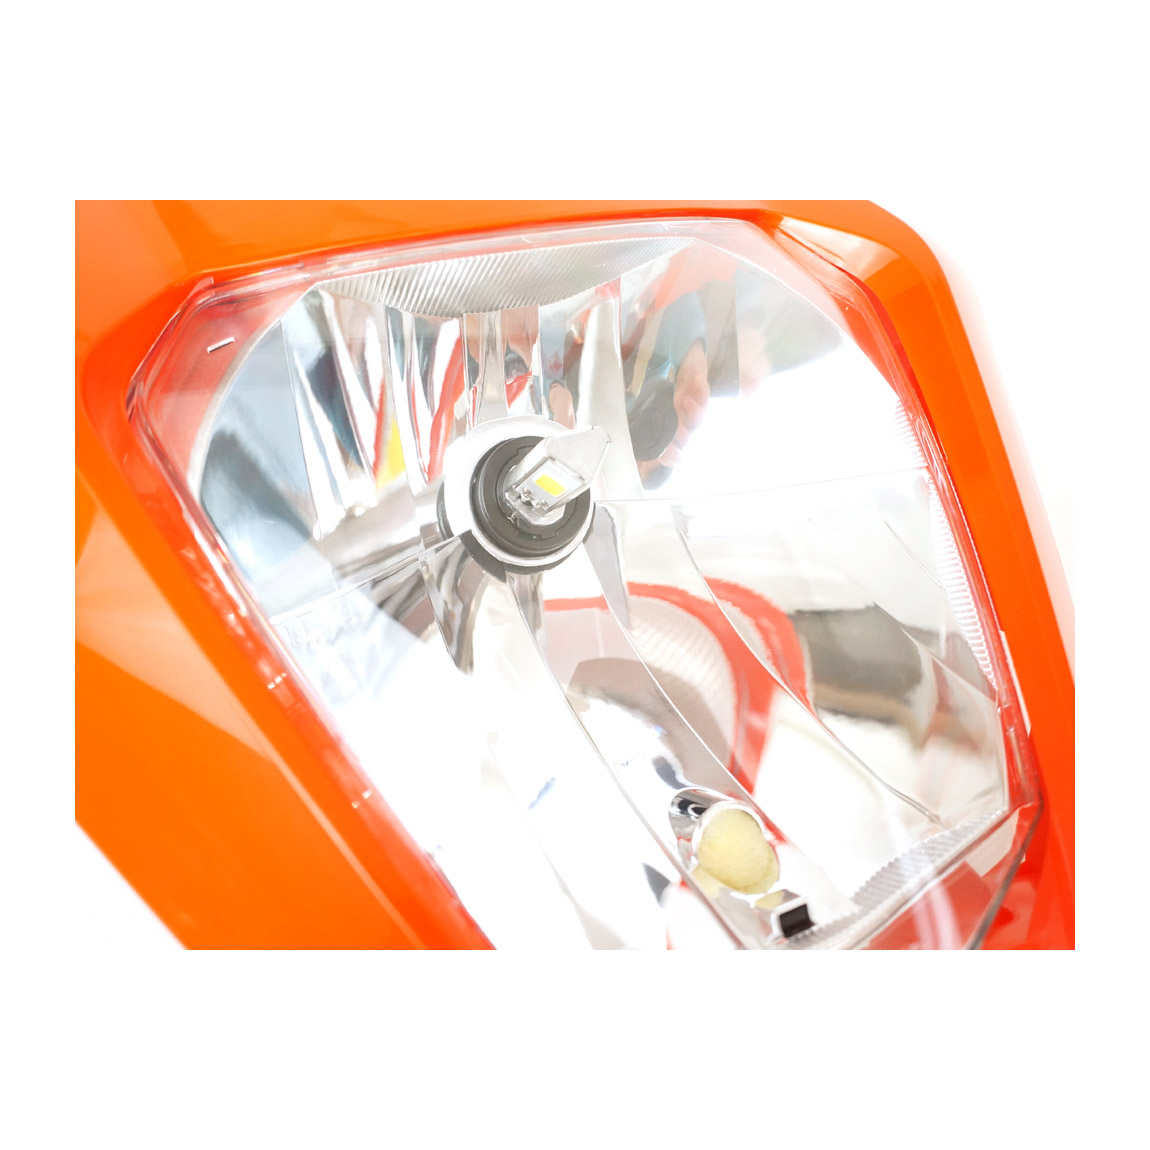 RTECH LED Scheinwerfer KTM EXC/EXC-F